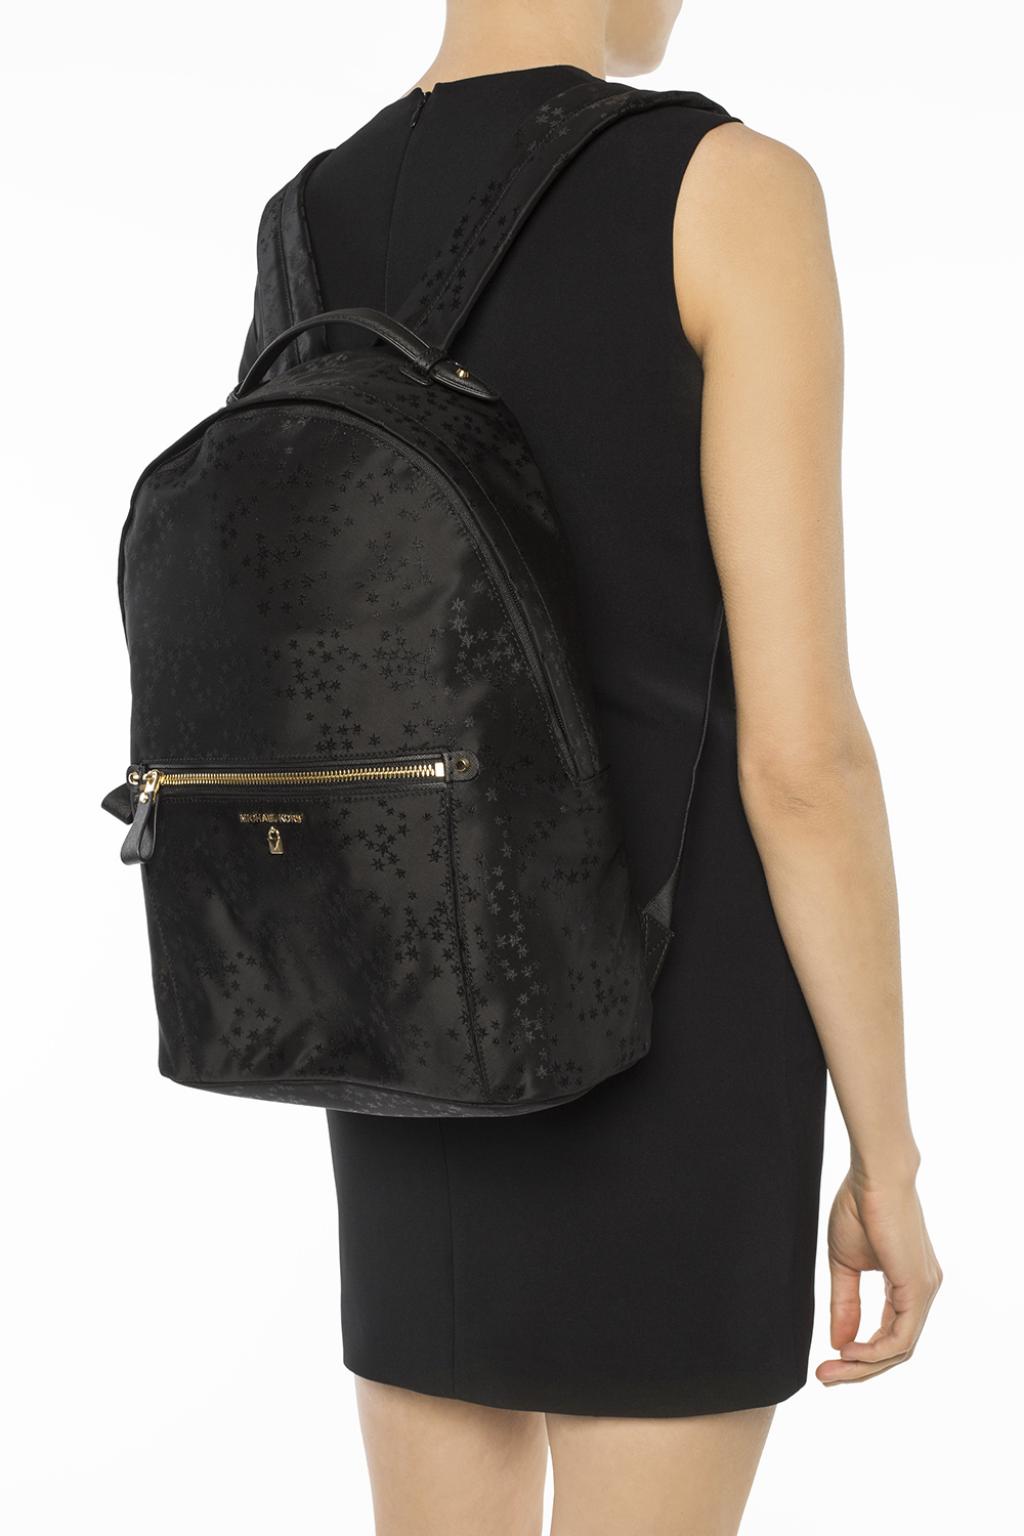 Michael Kors Nylon Kelsey Black Backpack